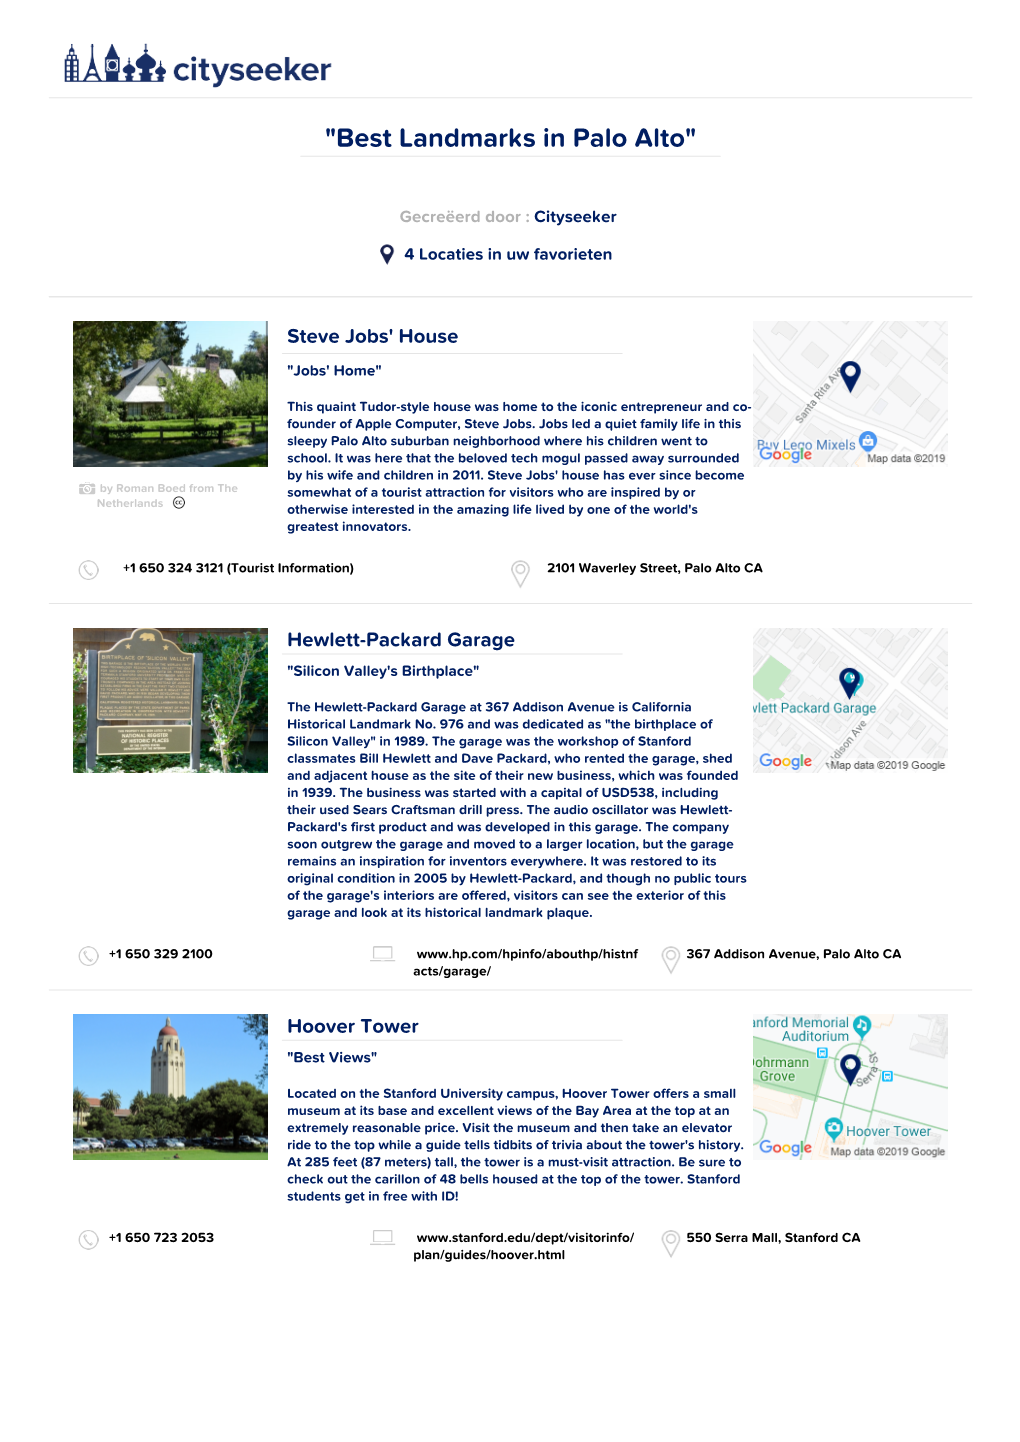 Best Landmarks in Palo Alto"